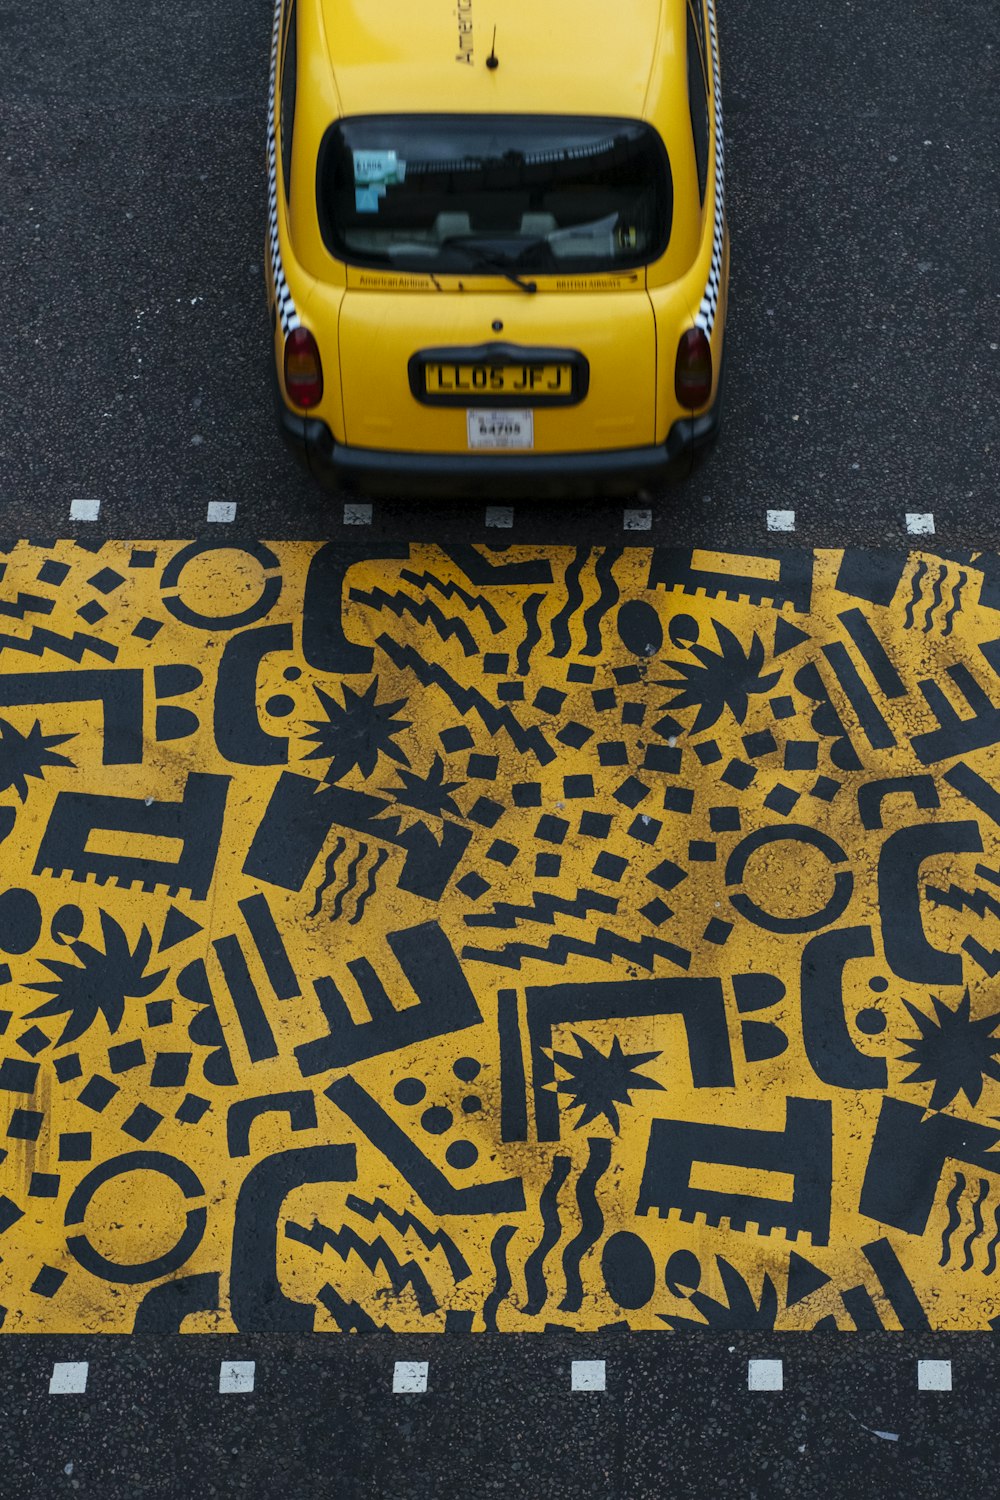 Veicolo giallo parcheggiato sulla strada durante il giorno